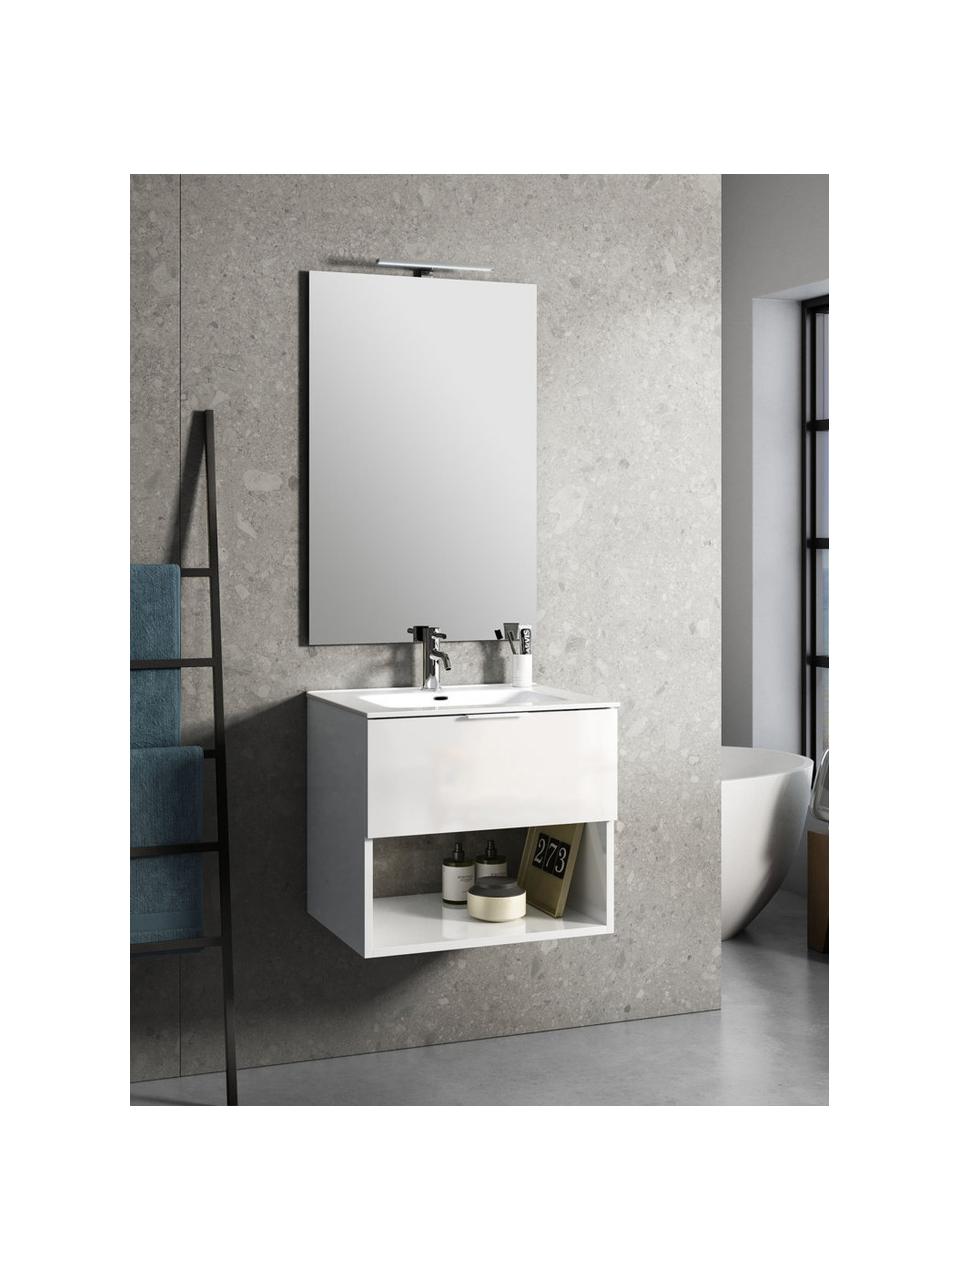 Set lavabo One 4 pz, Manico: alluminio, rivestito, Lampada: alluminio, rivestito, Superficie dello specchio: vetro a specchio, Bianco, Set in varie misure